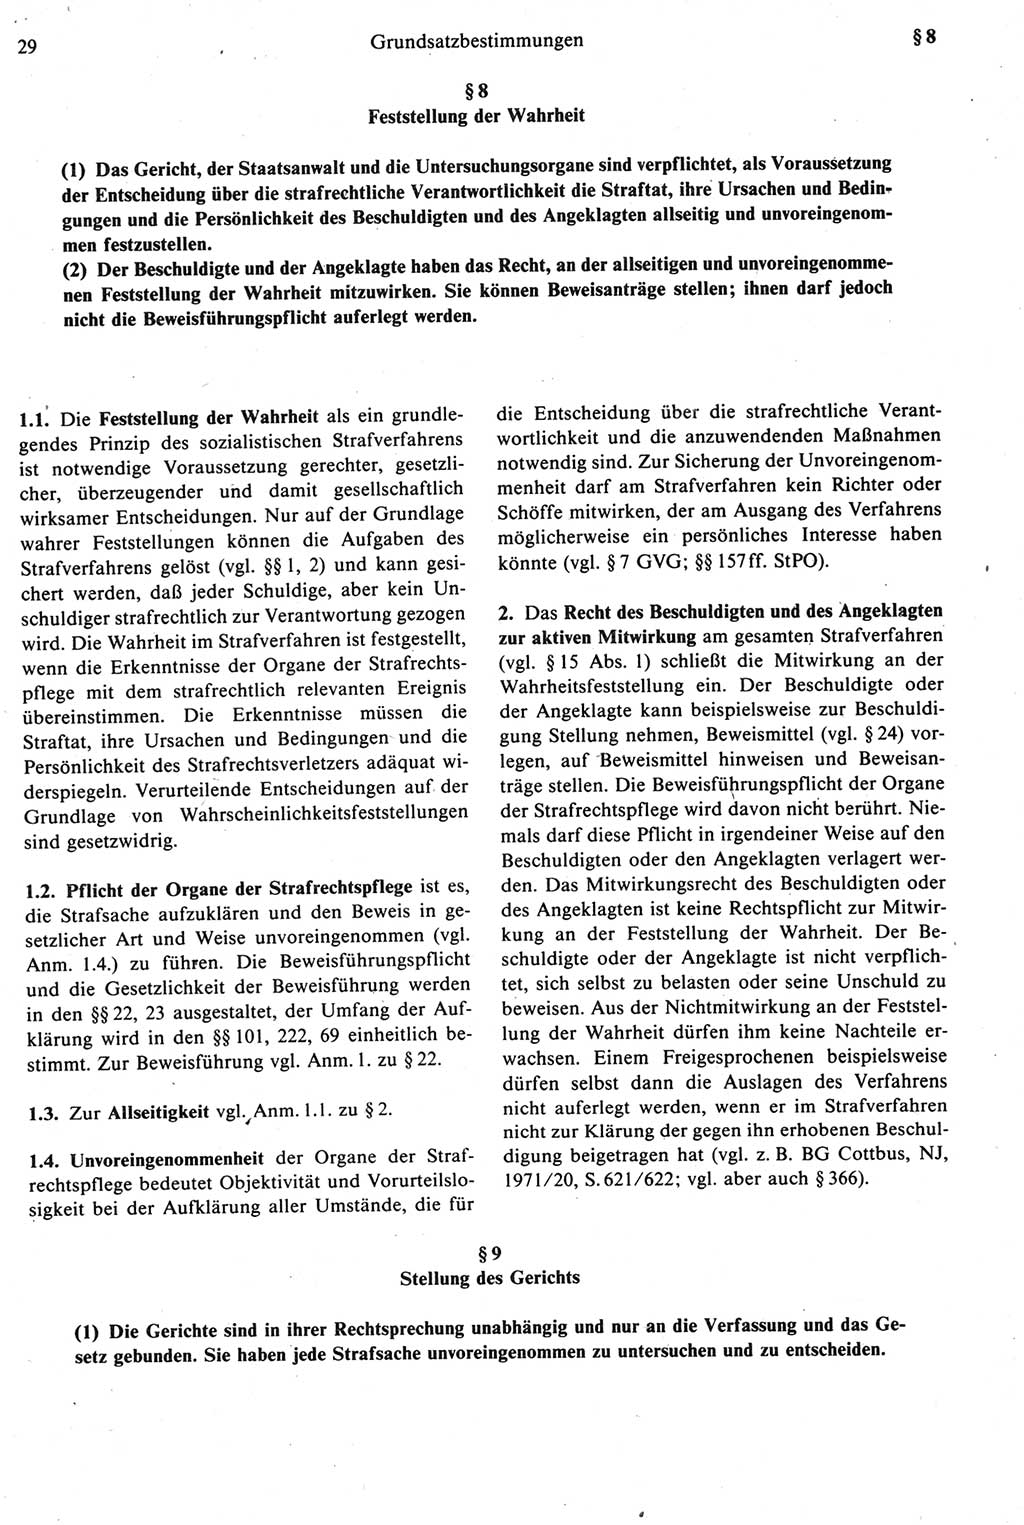 Strafprozeßrecht der DDR [Deutsche Demokratische Republik], Kommentar zur Strafprozeßordnung (StPO) 1987, Seite 29 (Strafprozeßr. DDR Komm. StPO 1987, S. 29)